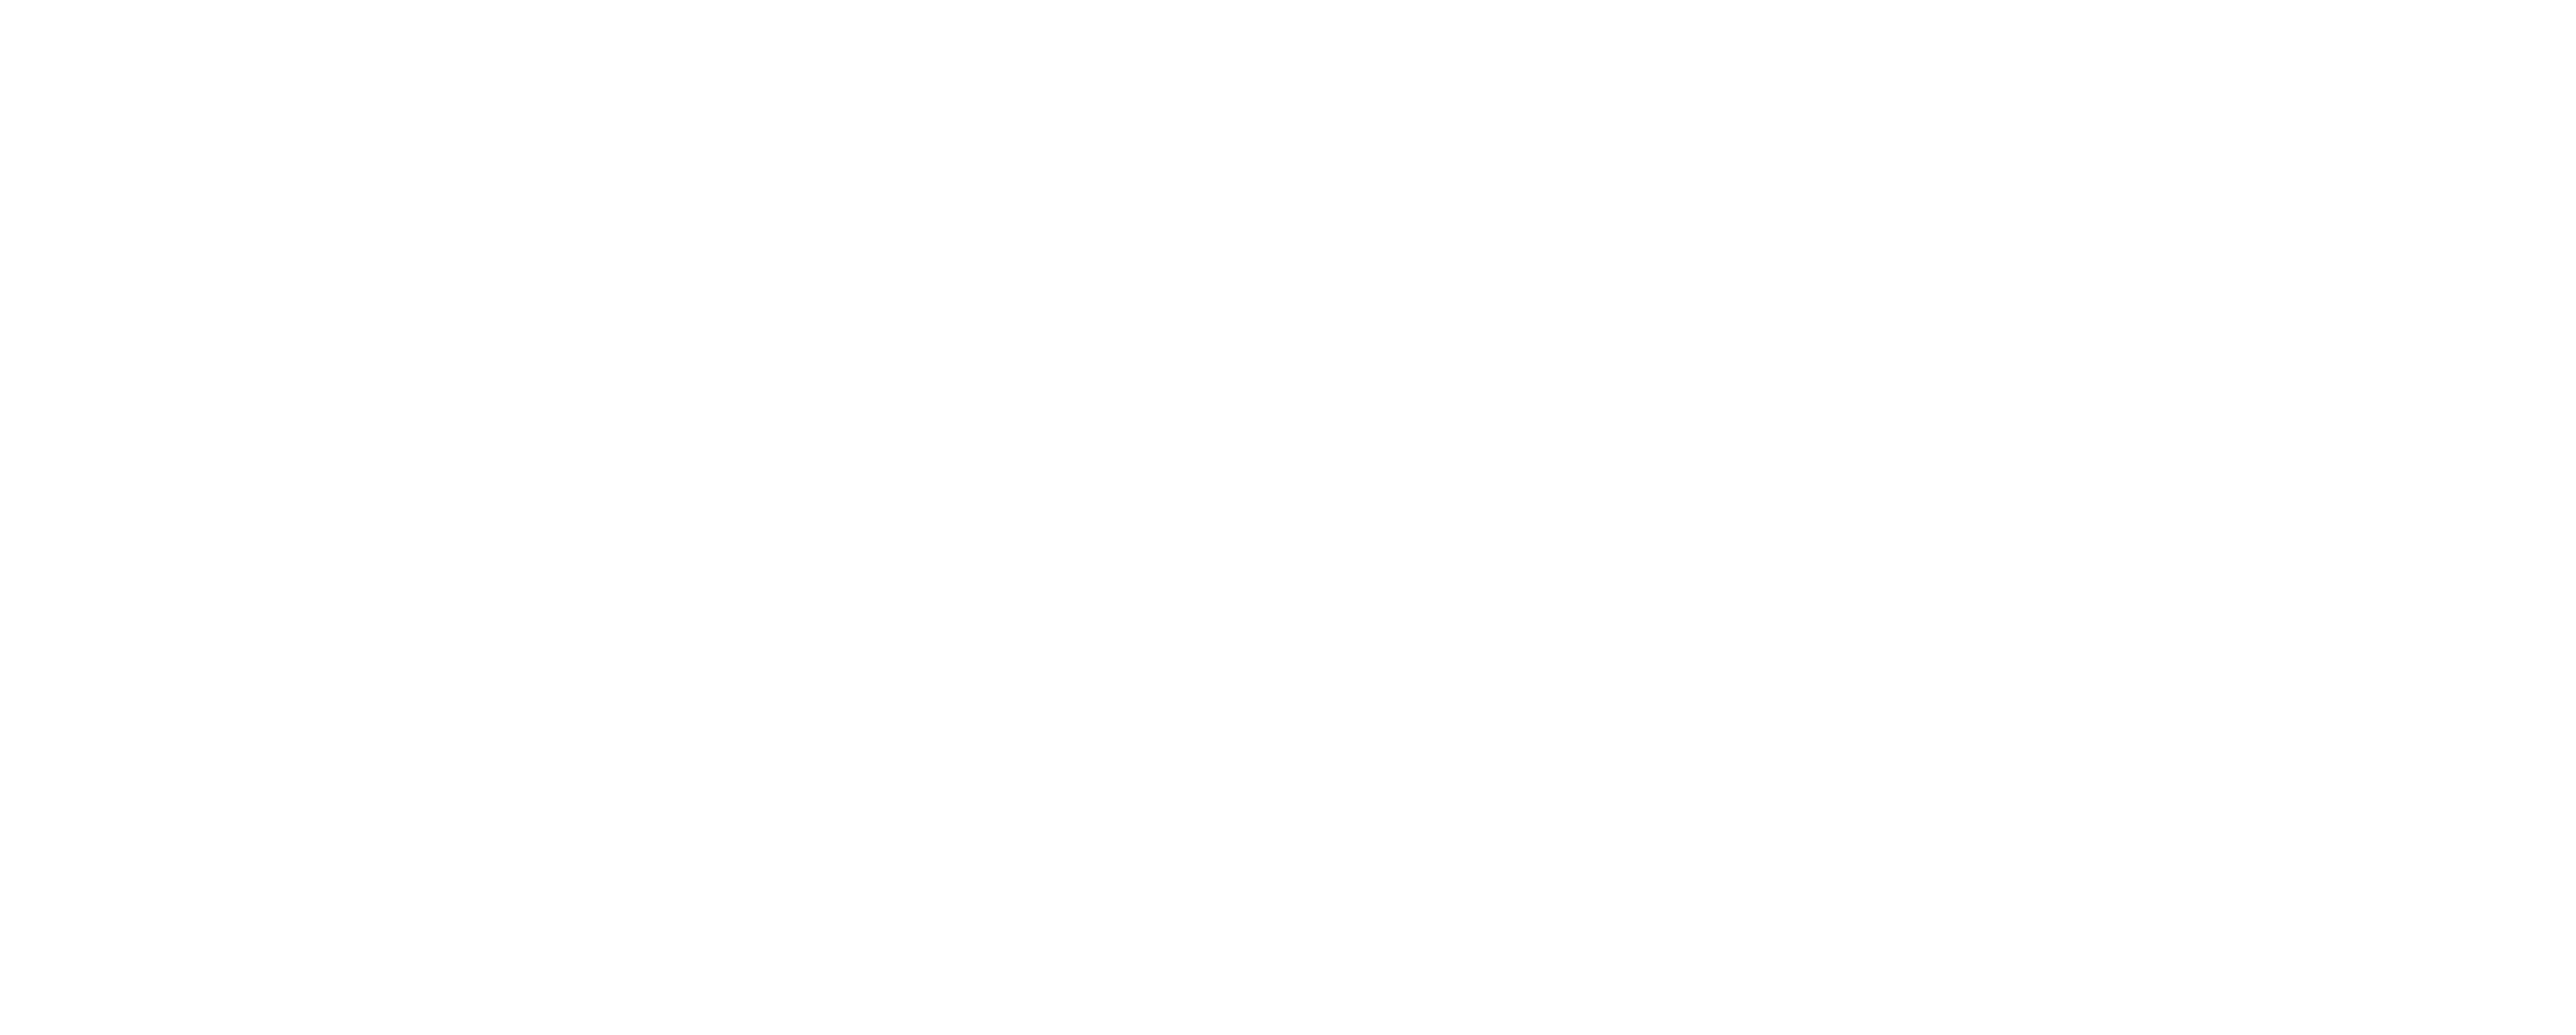 logo blog cocktails destinationcocktails.fr